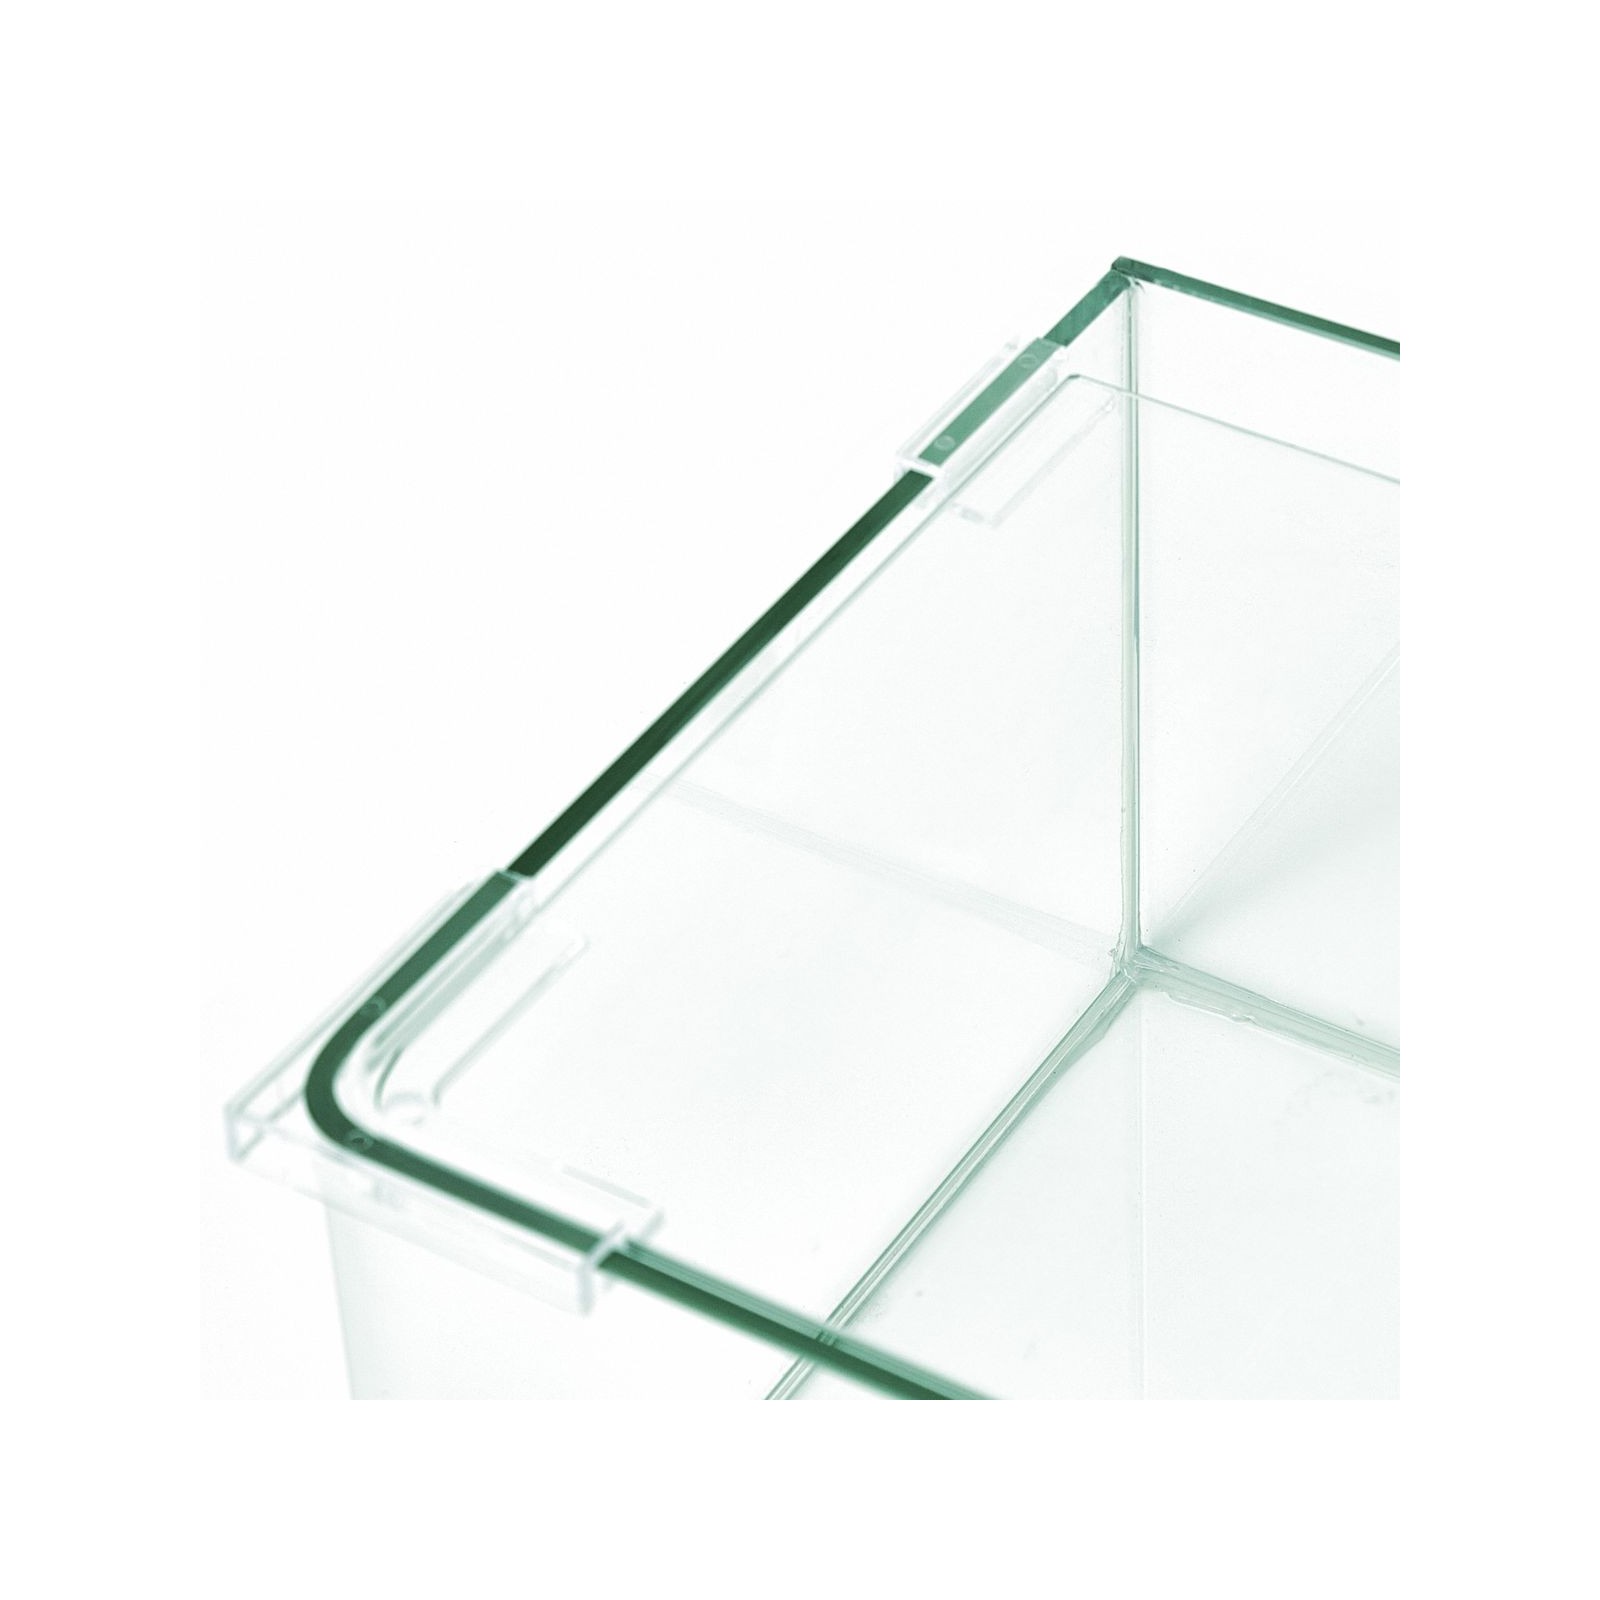 Náhradní krycí sklo + plastové podpěry BLAU Cubic 4528 - 38l